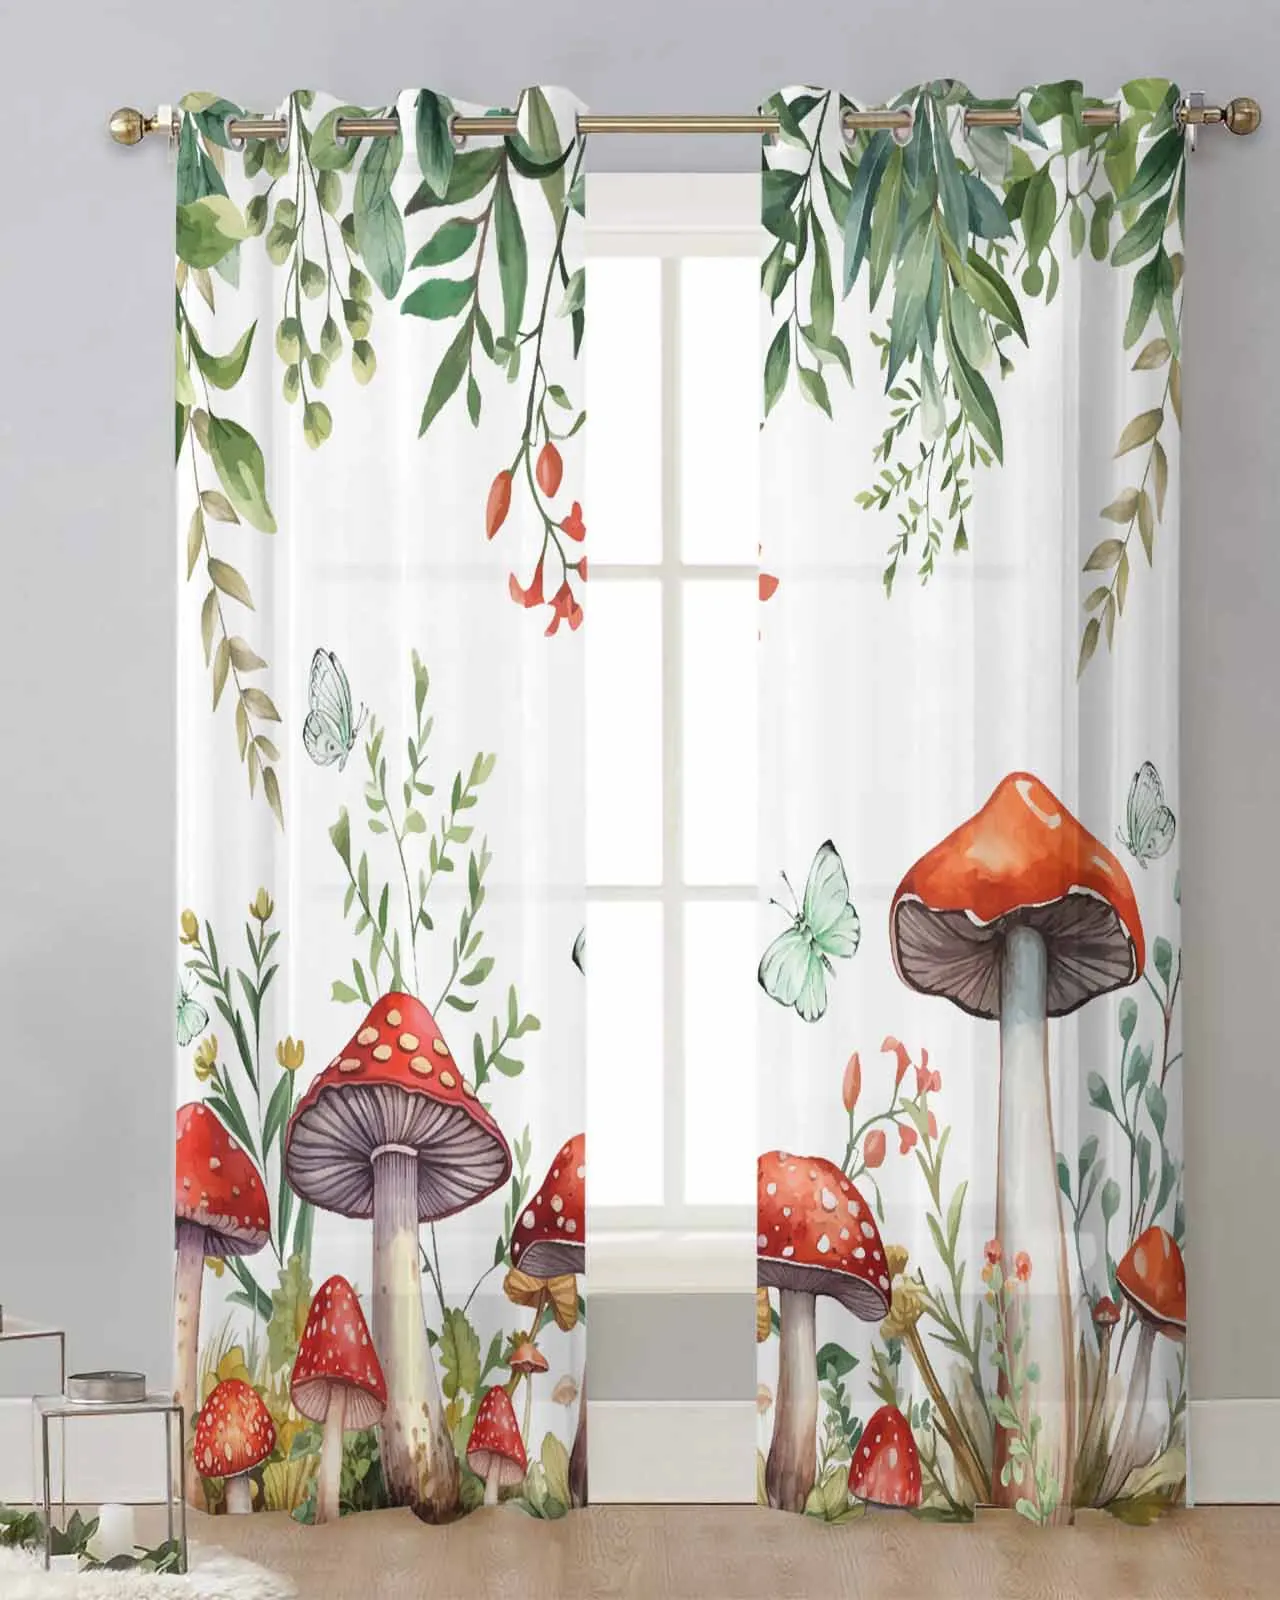 

Тюлевые шторы в стиле ретро, занавески с изображением грибов, растений, акварельных цветов, бабочек, прозрачные оконные шторы для гостиной